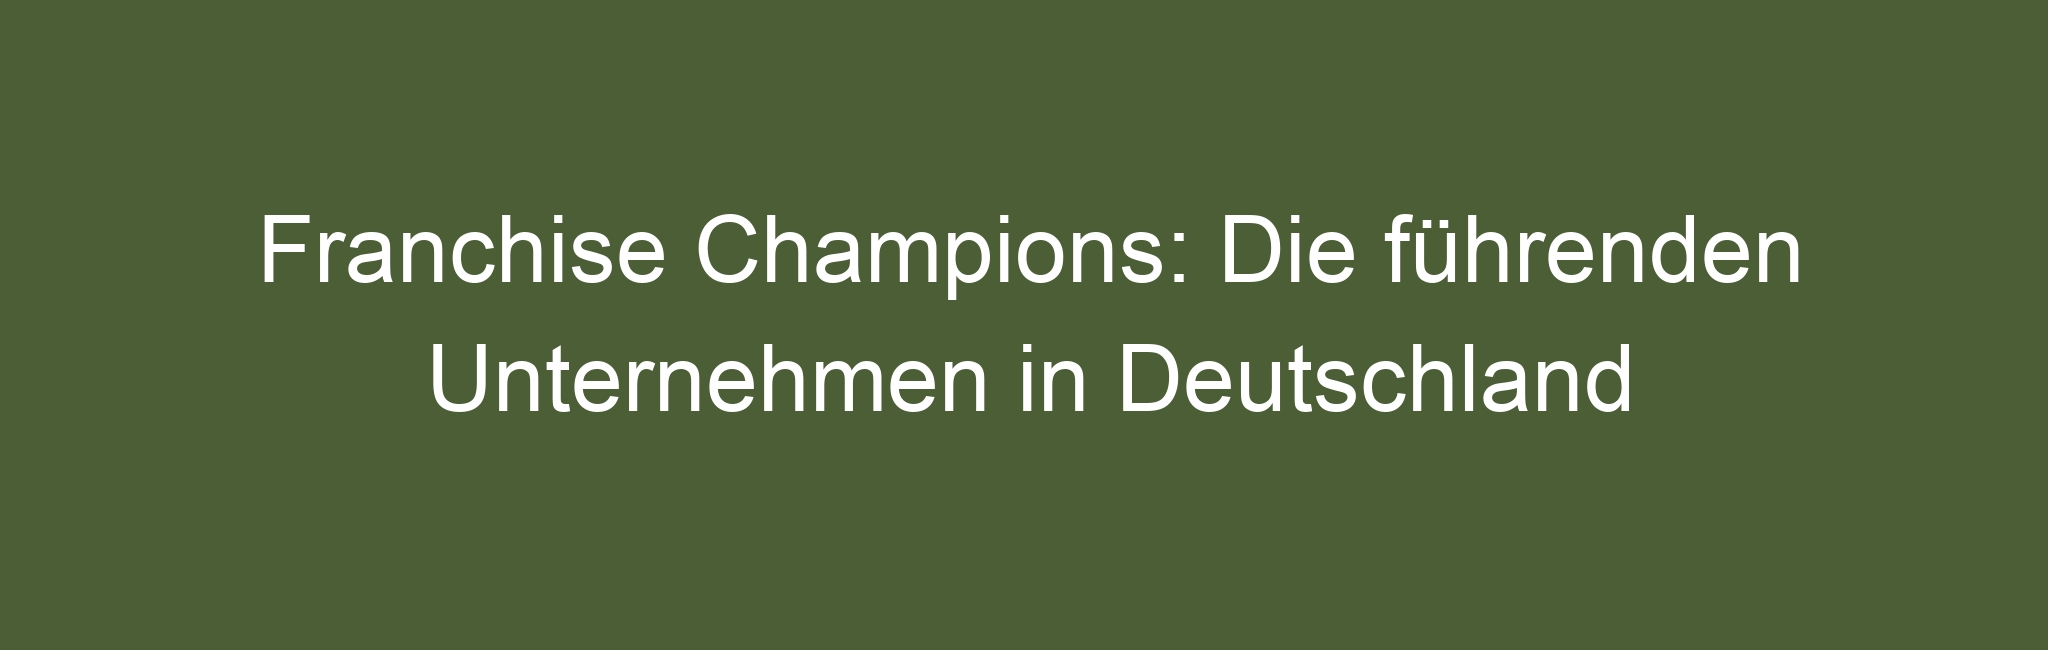 Franchise Champions: Die führenden Unternehmen in Deutschland